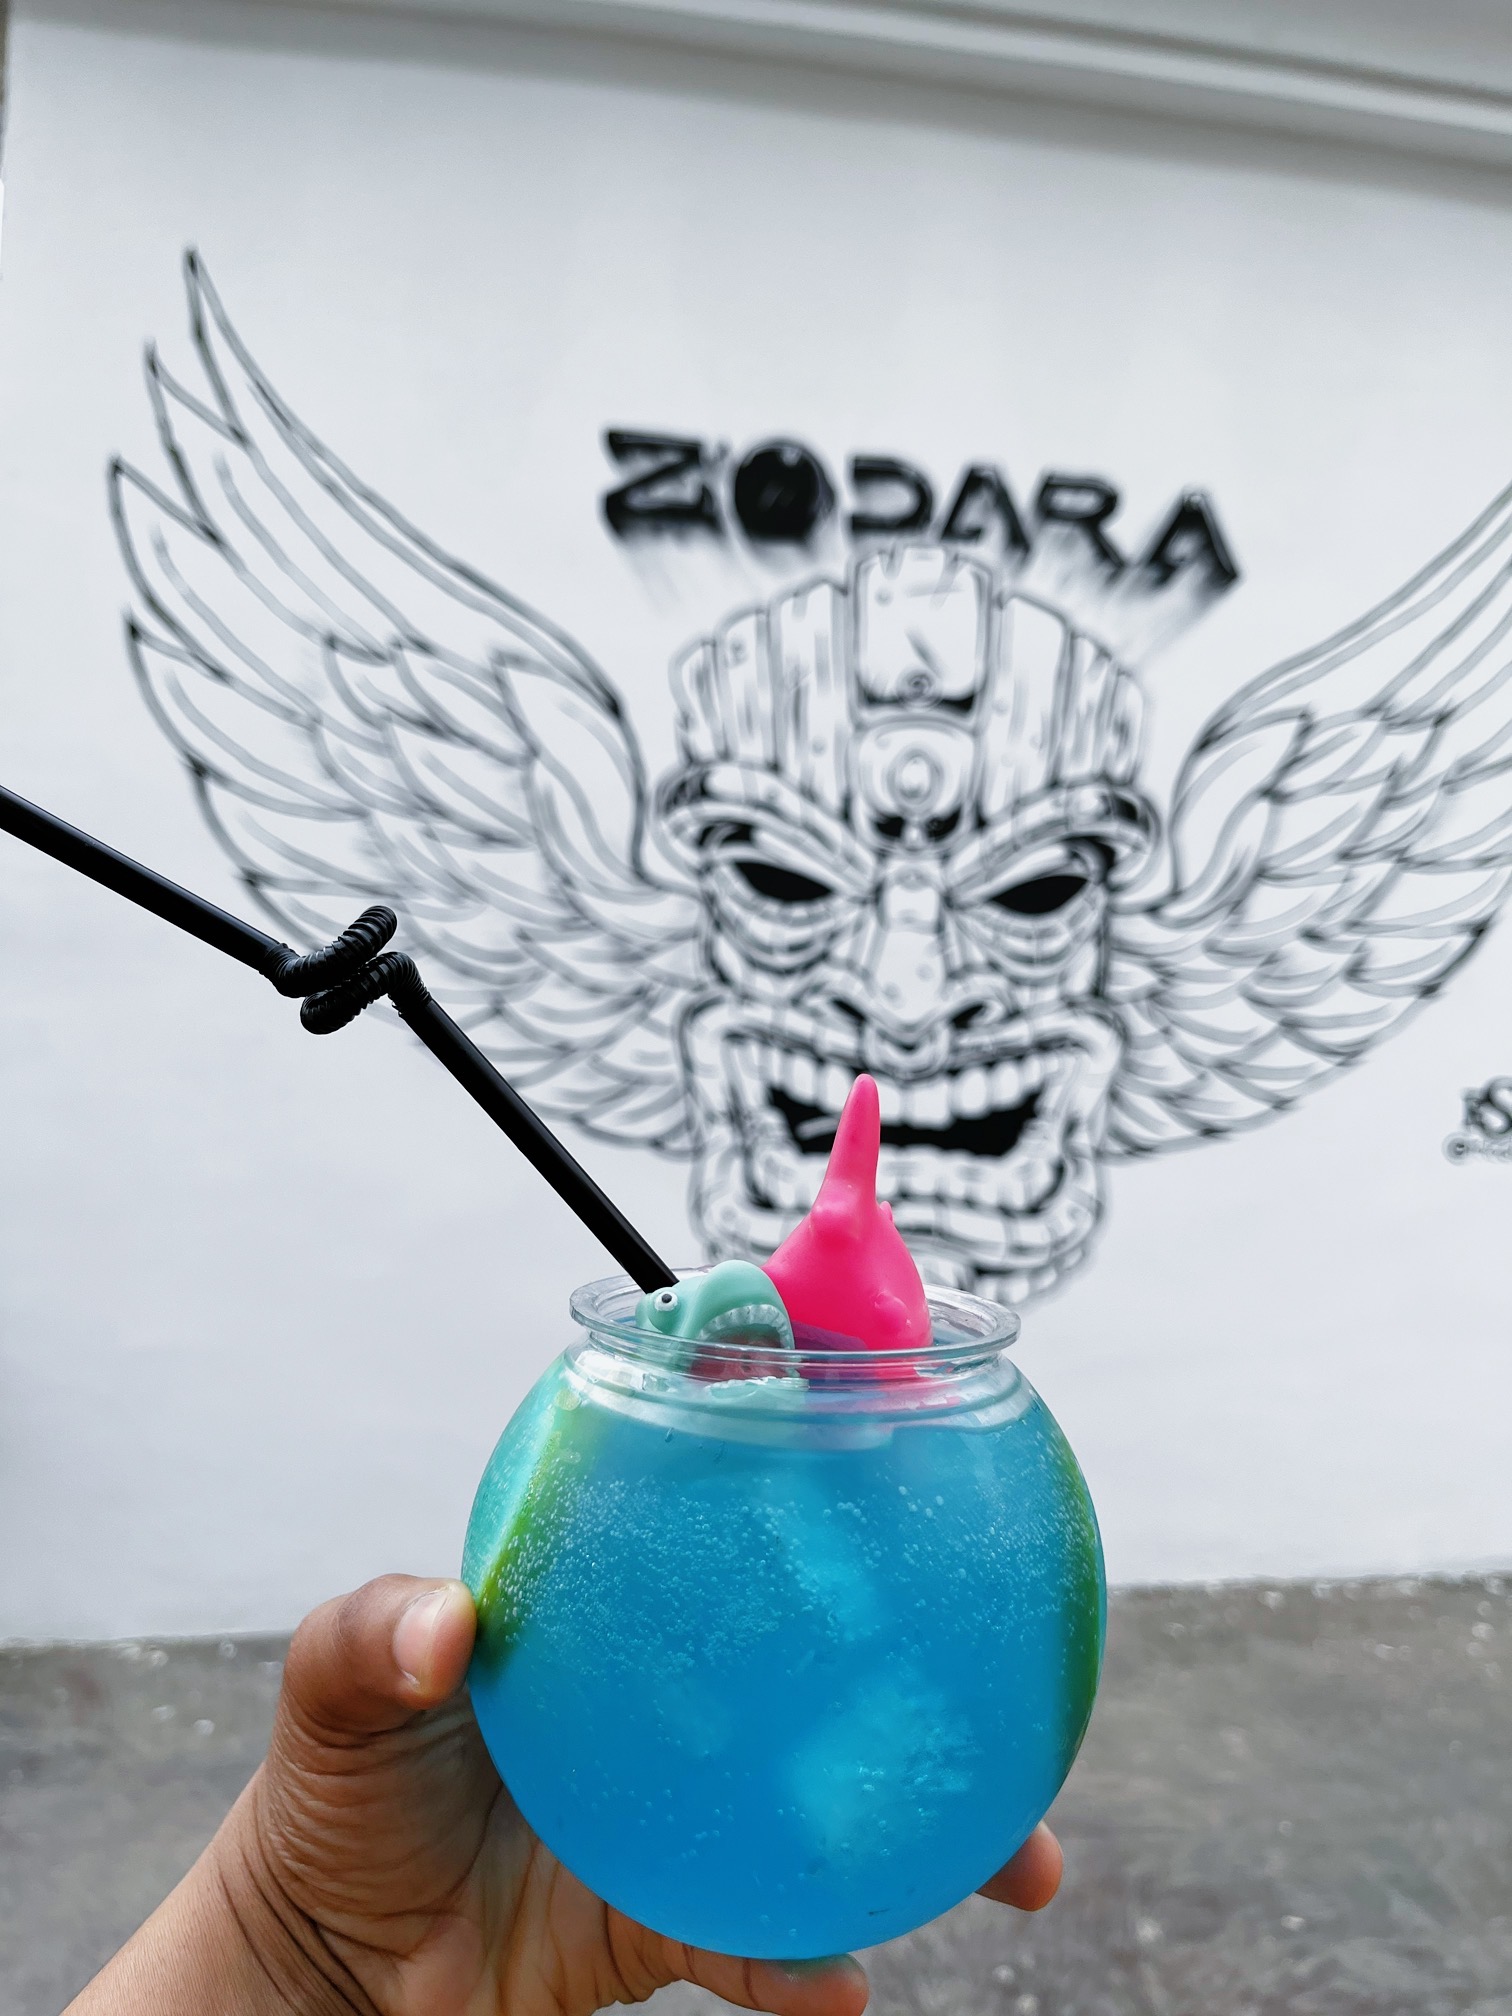 Zodara Cocktail bar Abuja